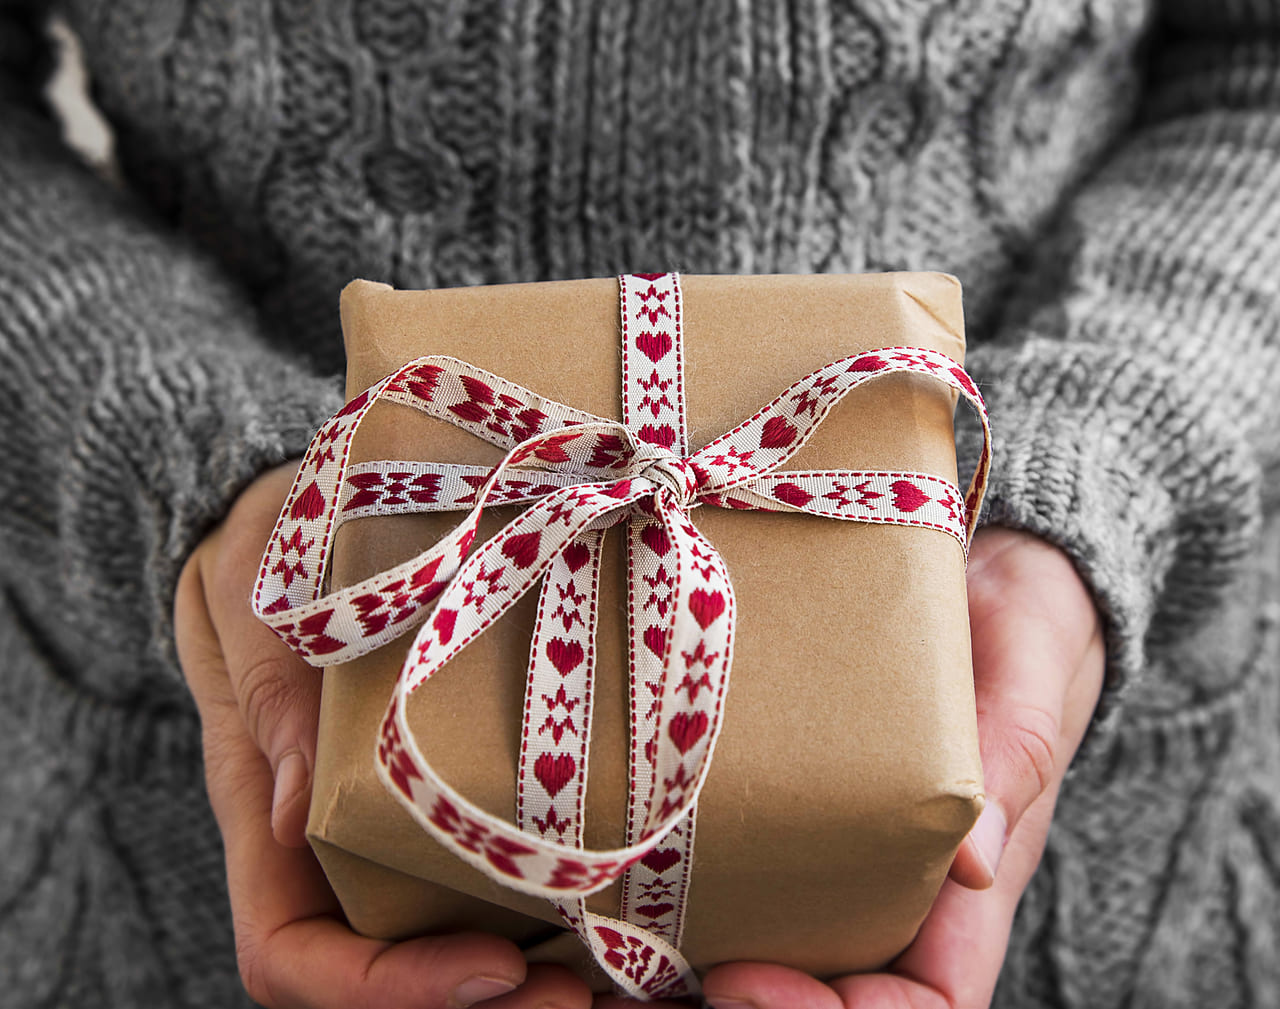 引っ越す友達に贈るプレゼント その引っ越し祝いは嬉しい 困る Giftpedia